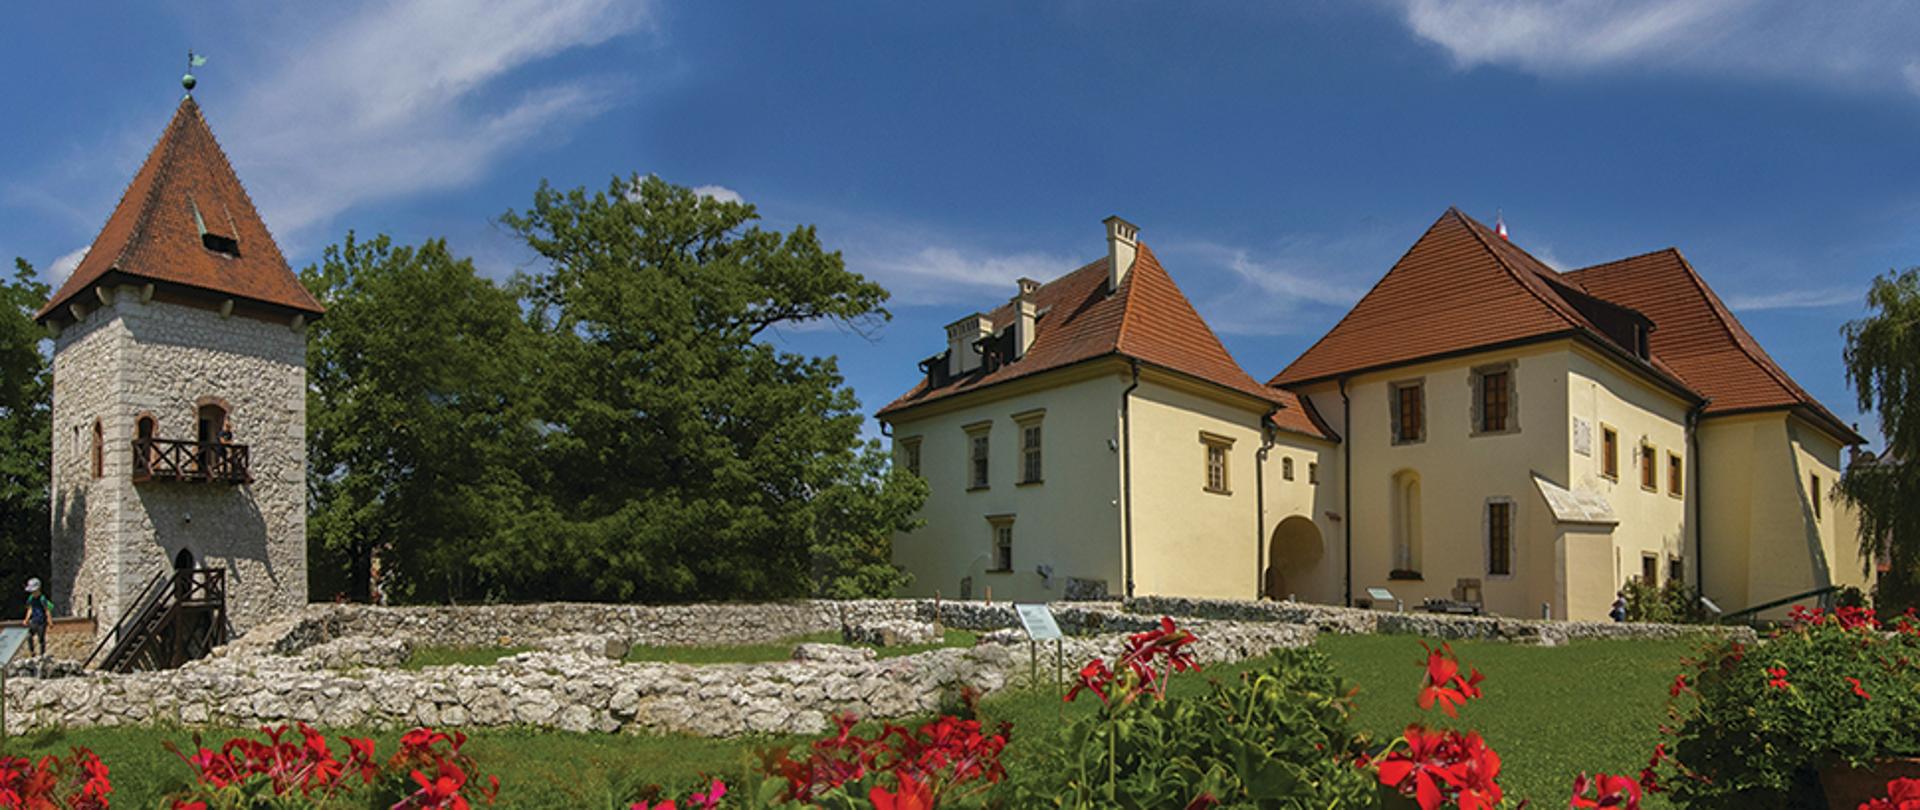 Zamek Żupny w Wieliczce, fot. D. Kołakowski
